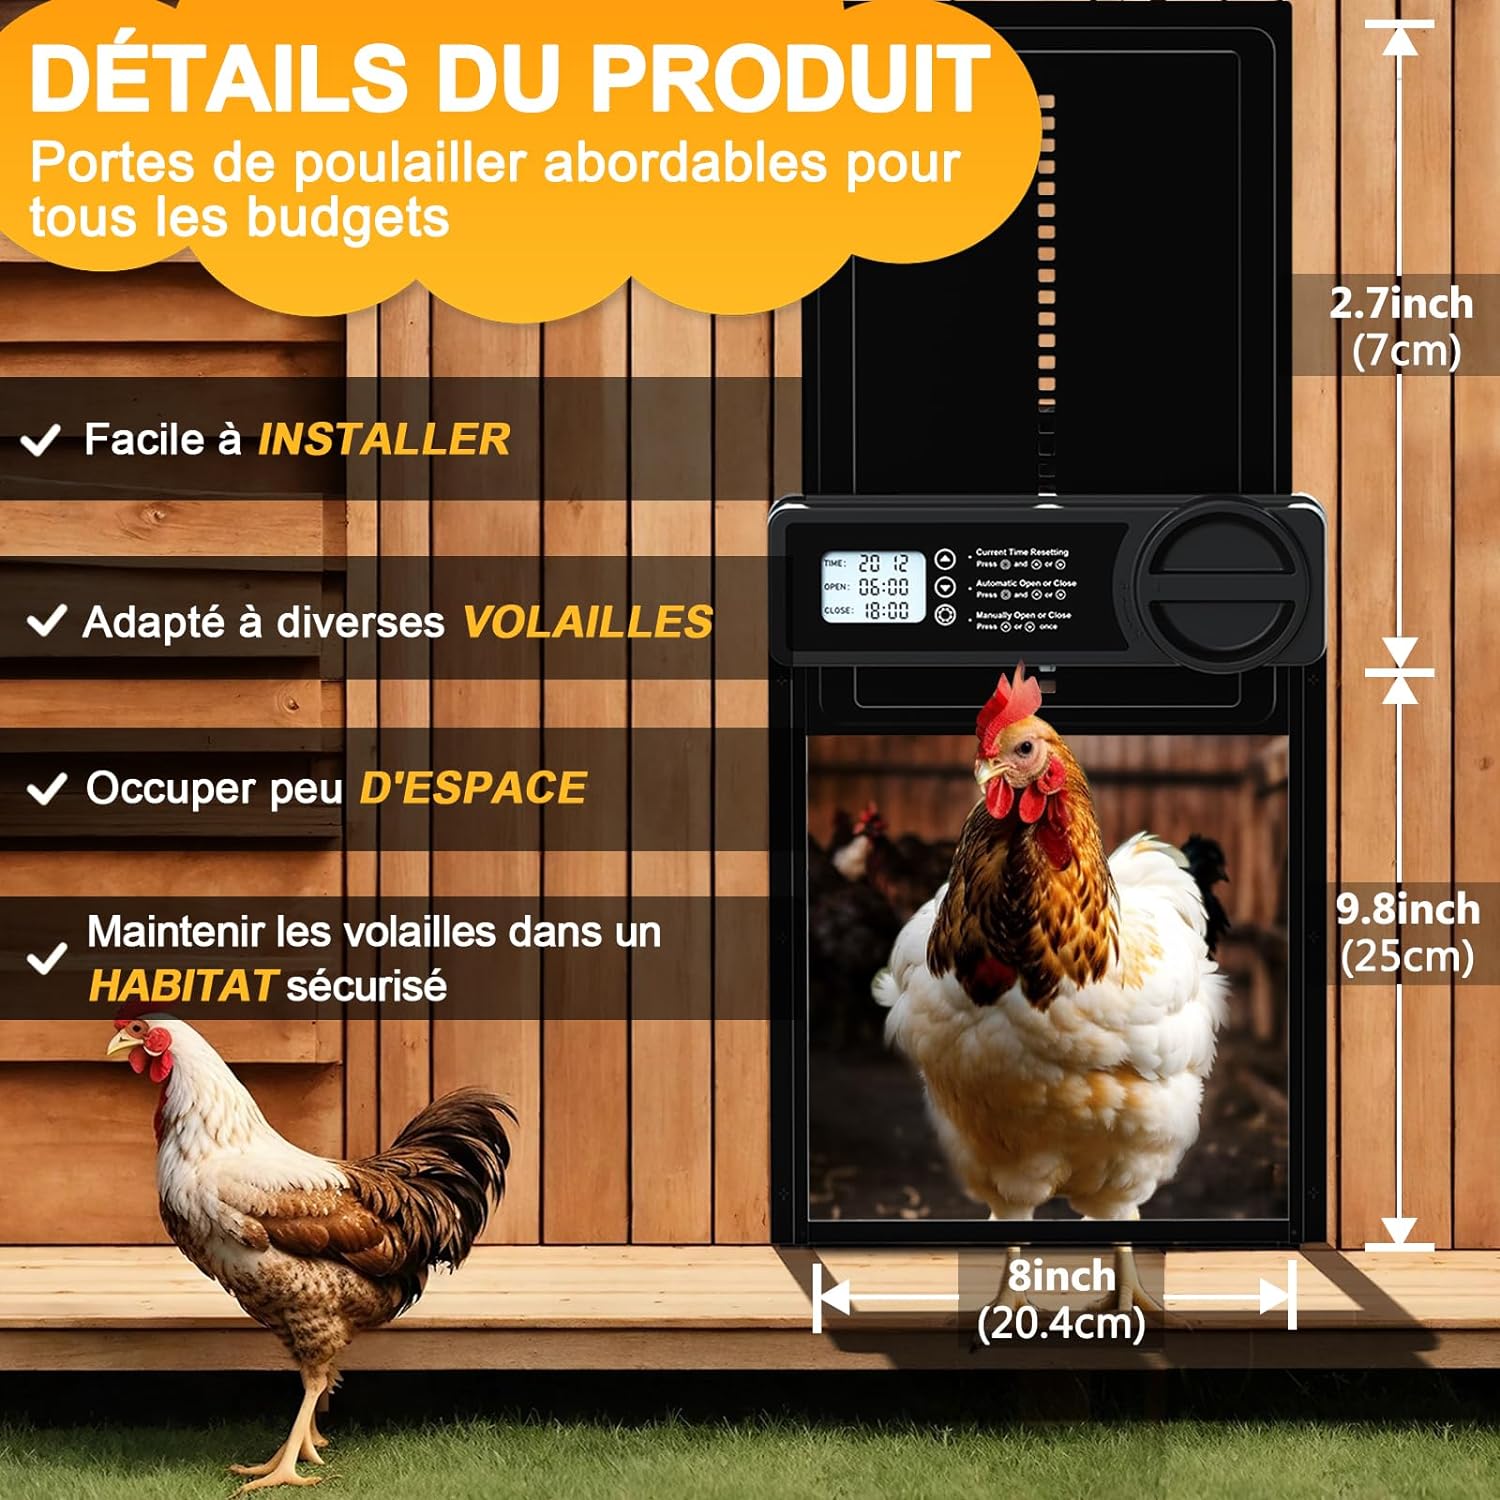 Installation aisée de la porte automatique FO-005-EU pour sécuriser vos poules.